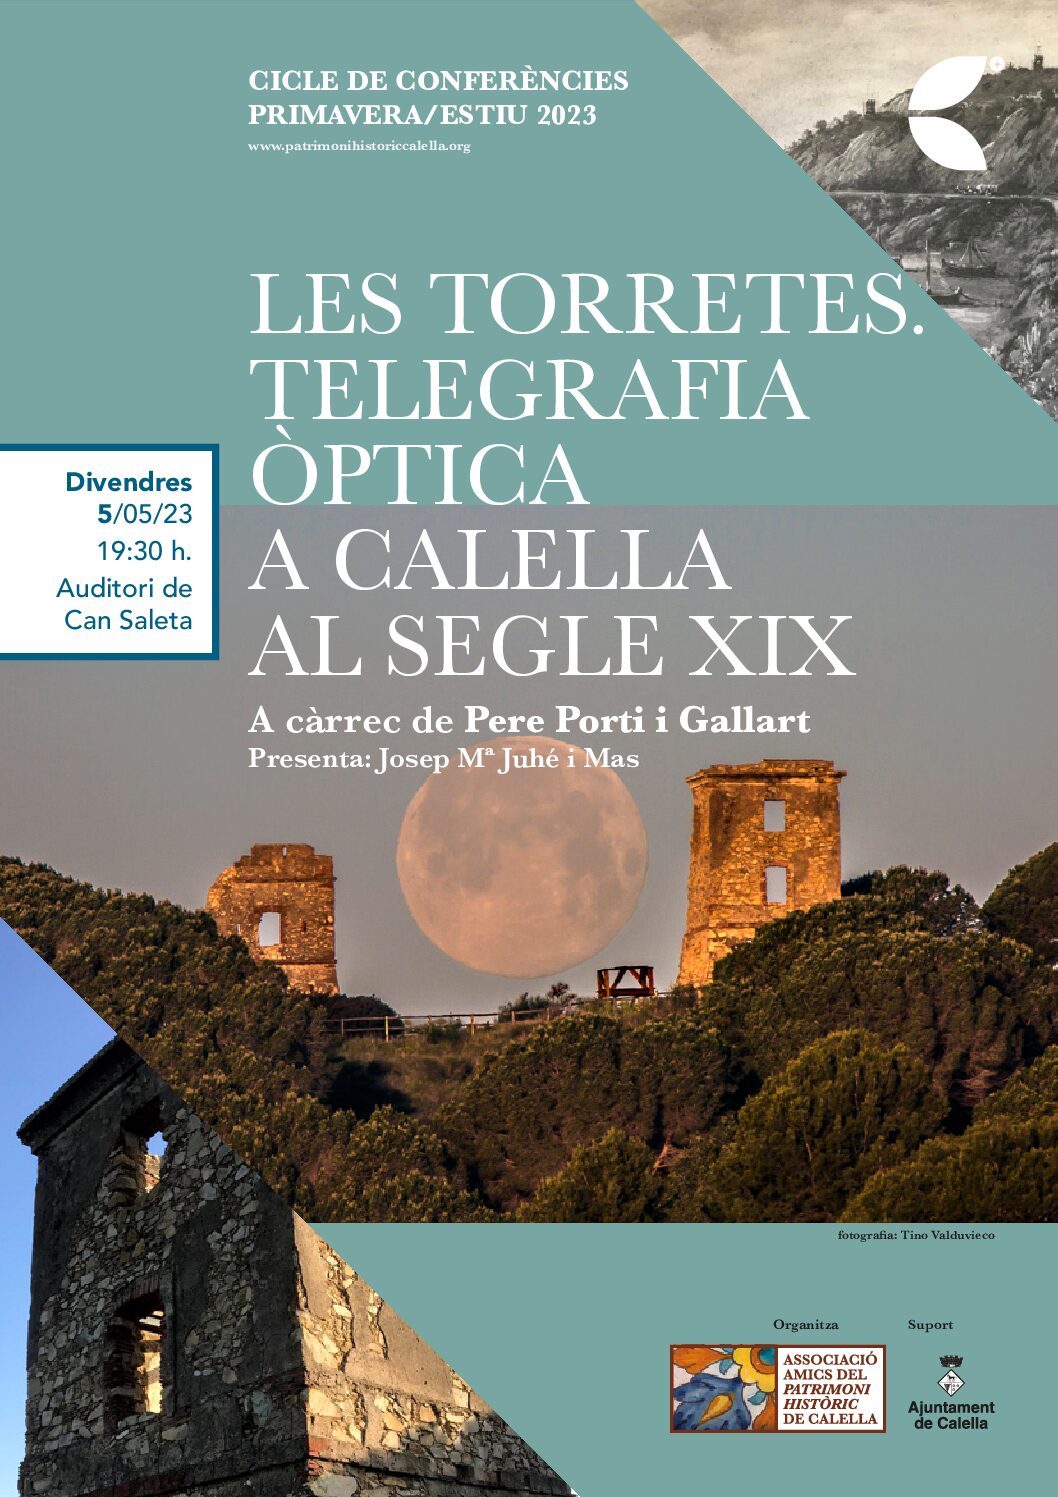 Conferència “Les torretes. Telegrafia òptica a Calella al segle XIX” per Pere Porti i Gallart